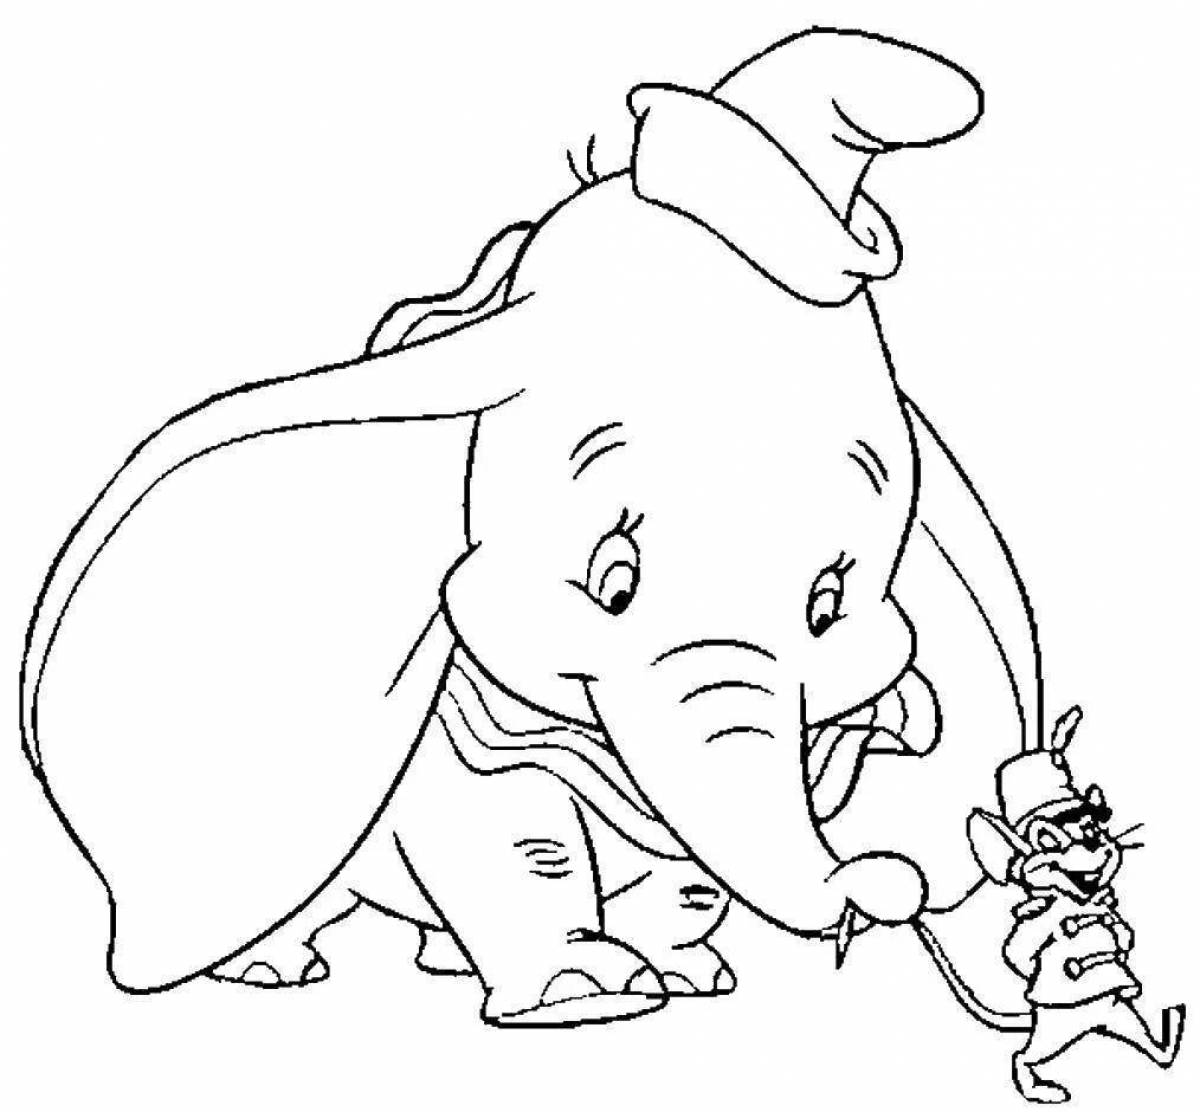 Радостная раскраска слоненка дамбо